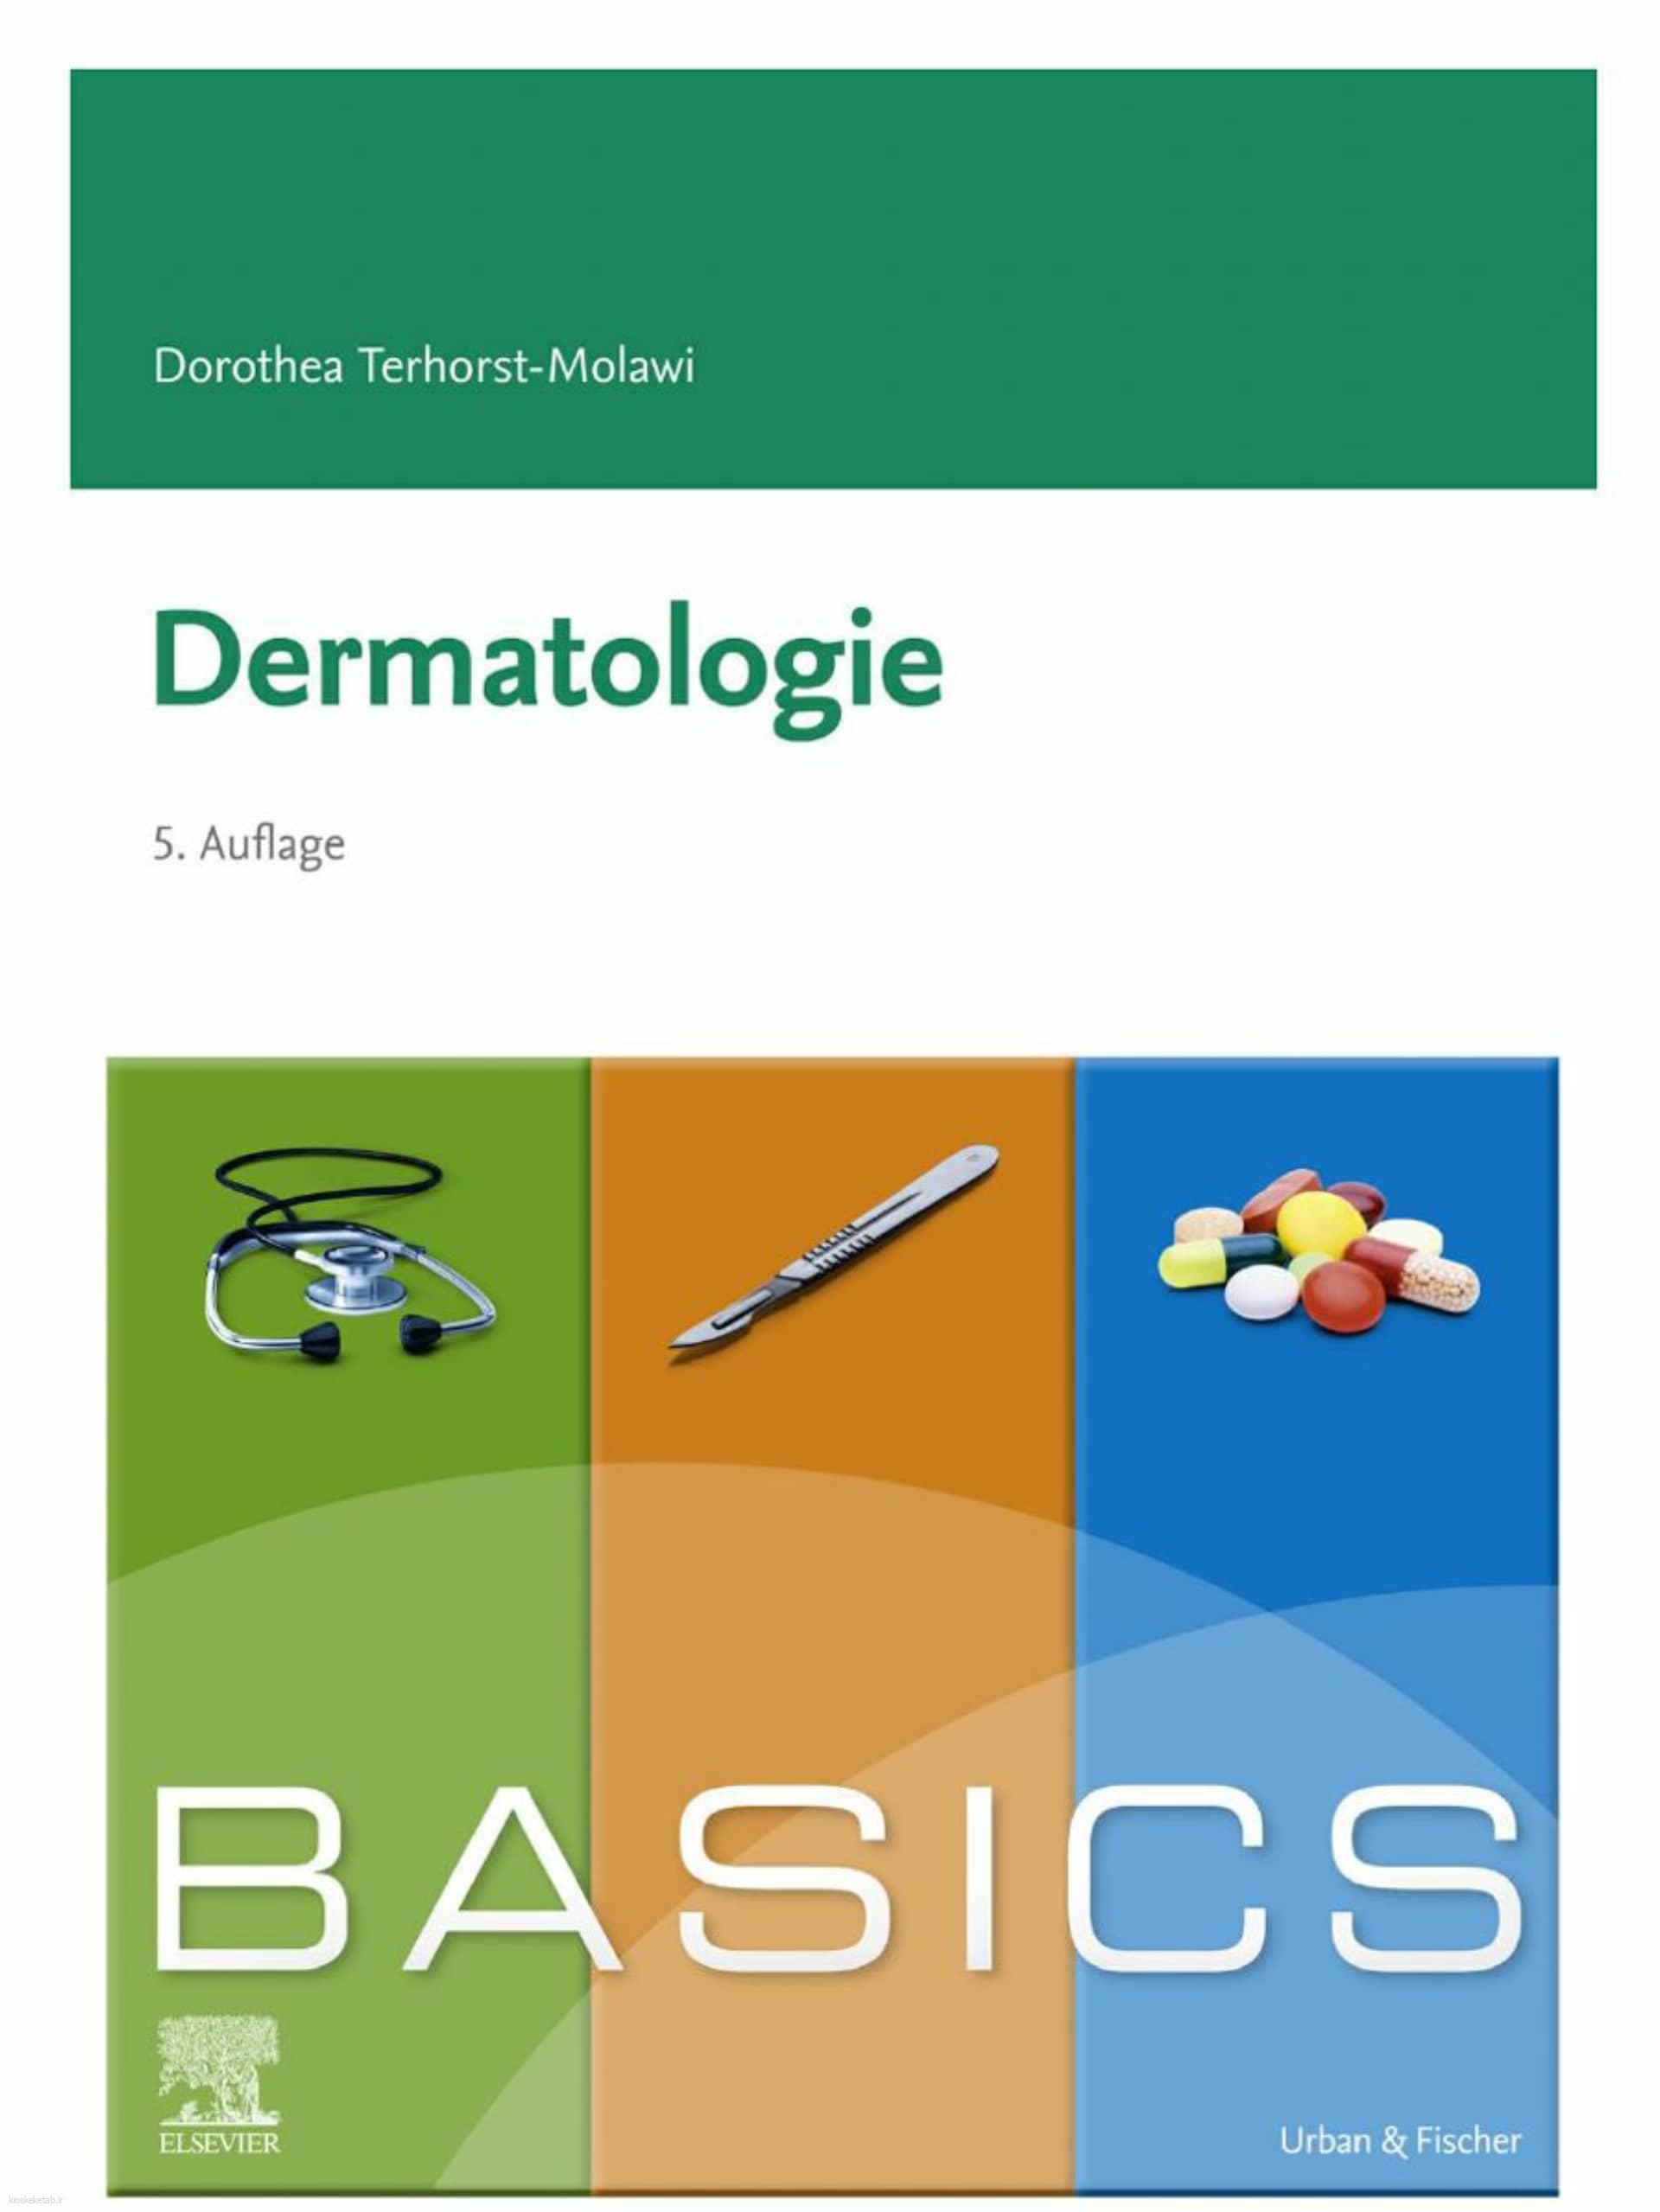 دانلود کتاب آلمانیbasics dermatologie